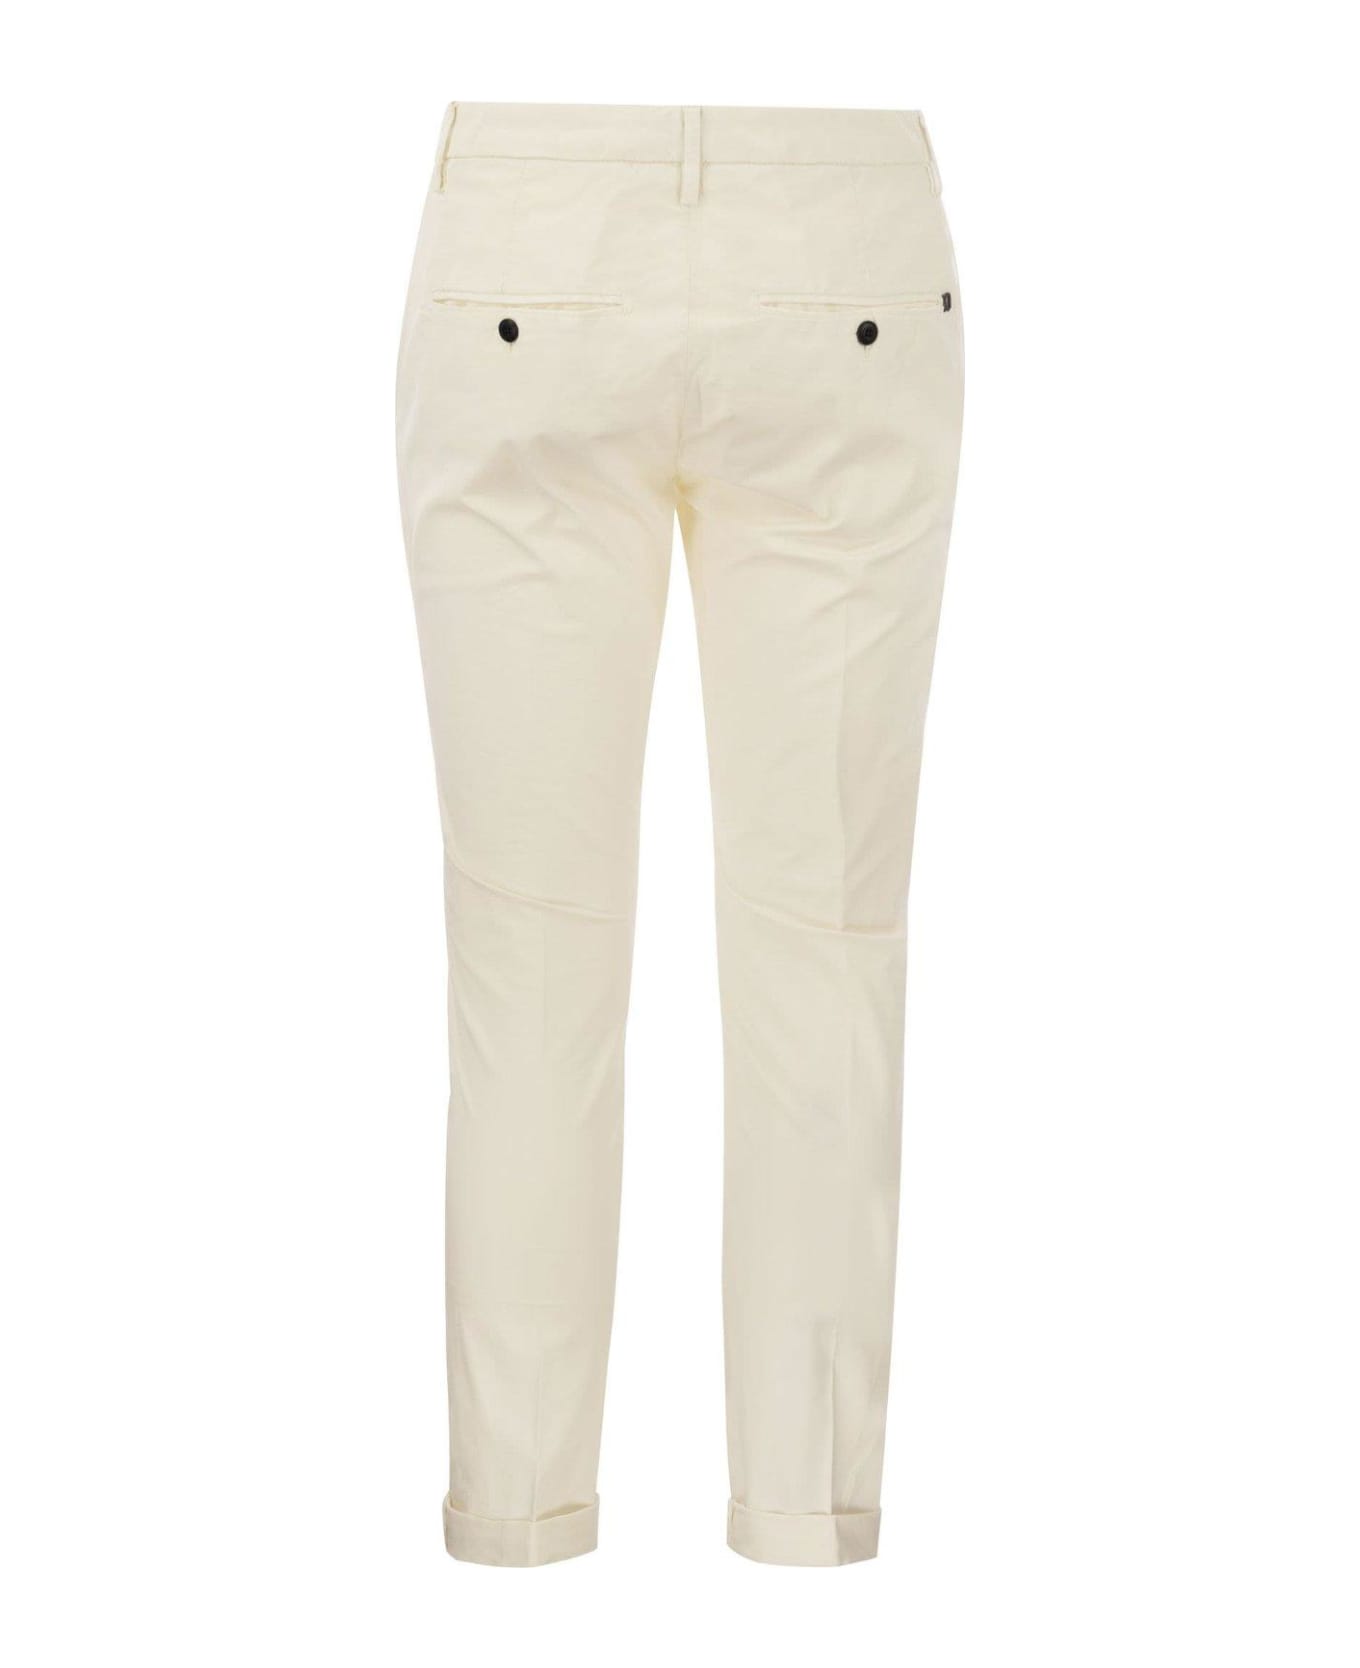 Dondup Gaubert - Slim-fit Gabardine Trousers - White